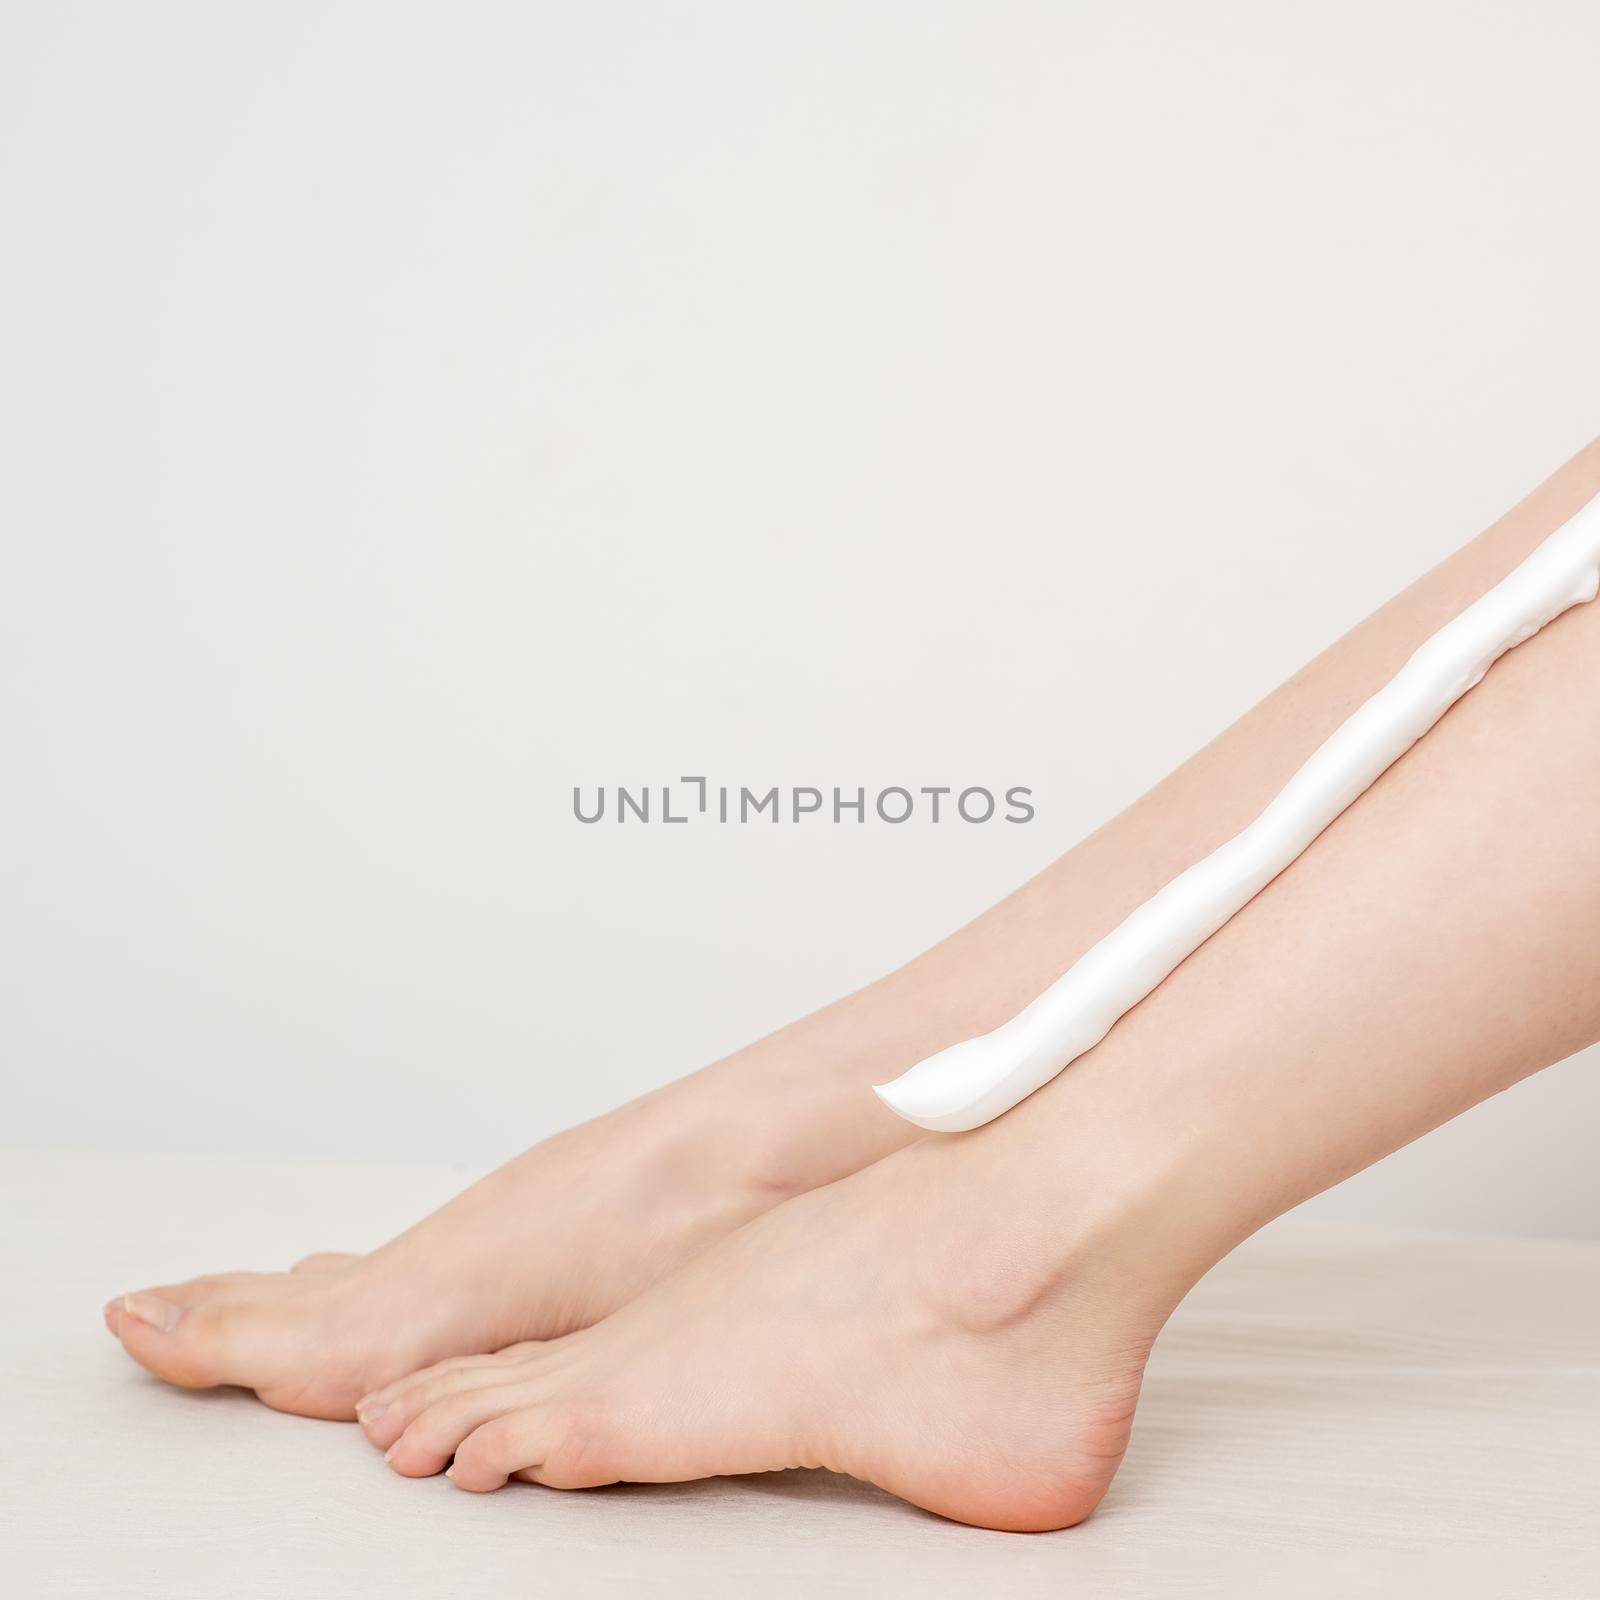 Female nice long slim bare legs with shaving foam on white background